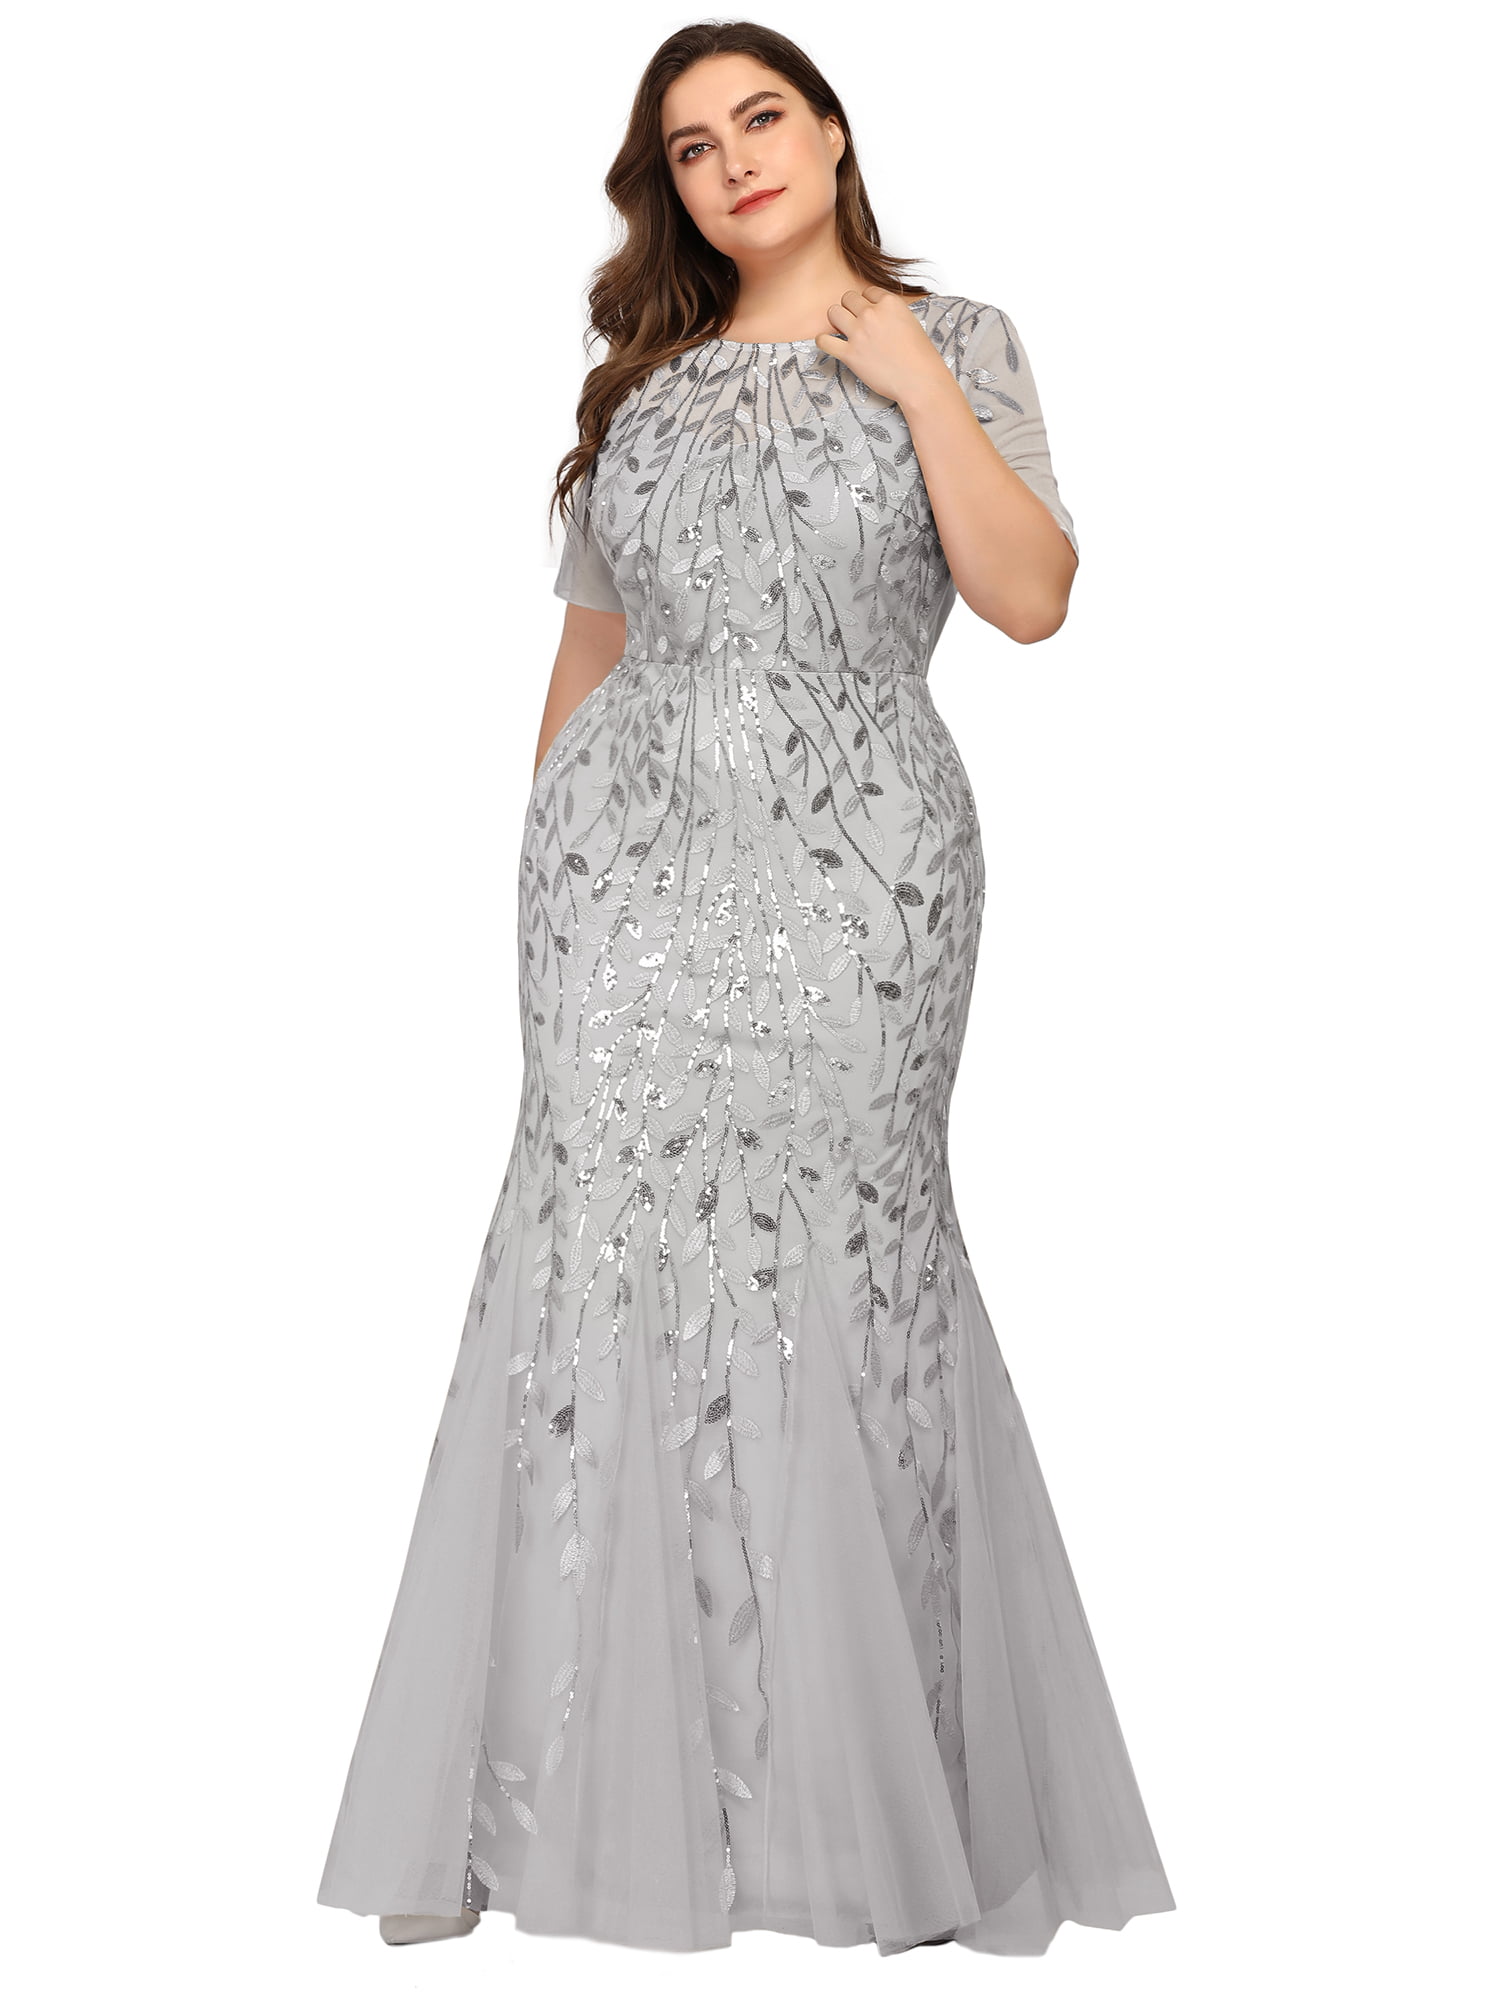 plus size long silver dress